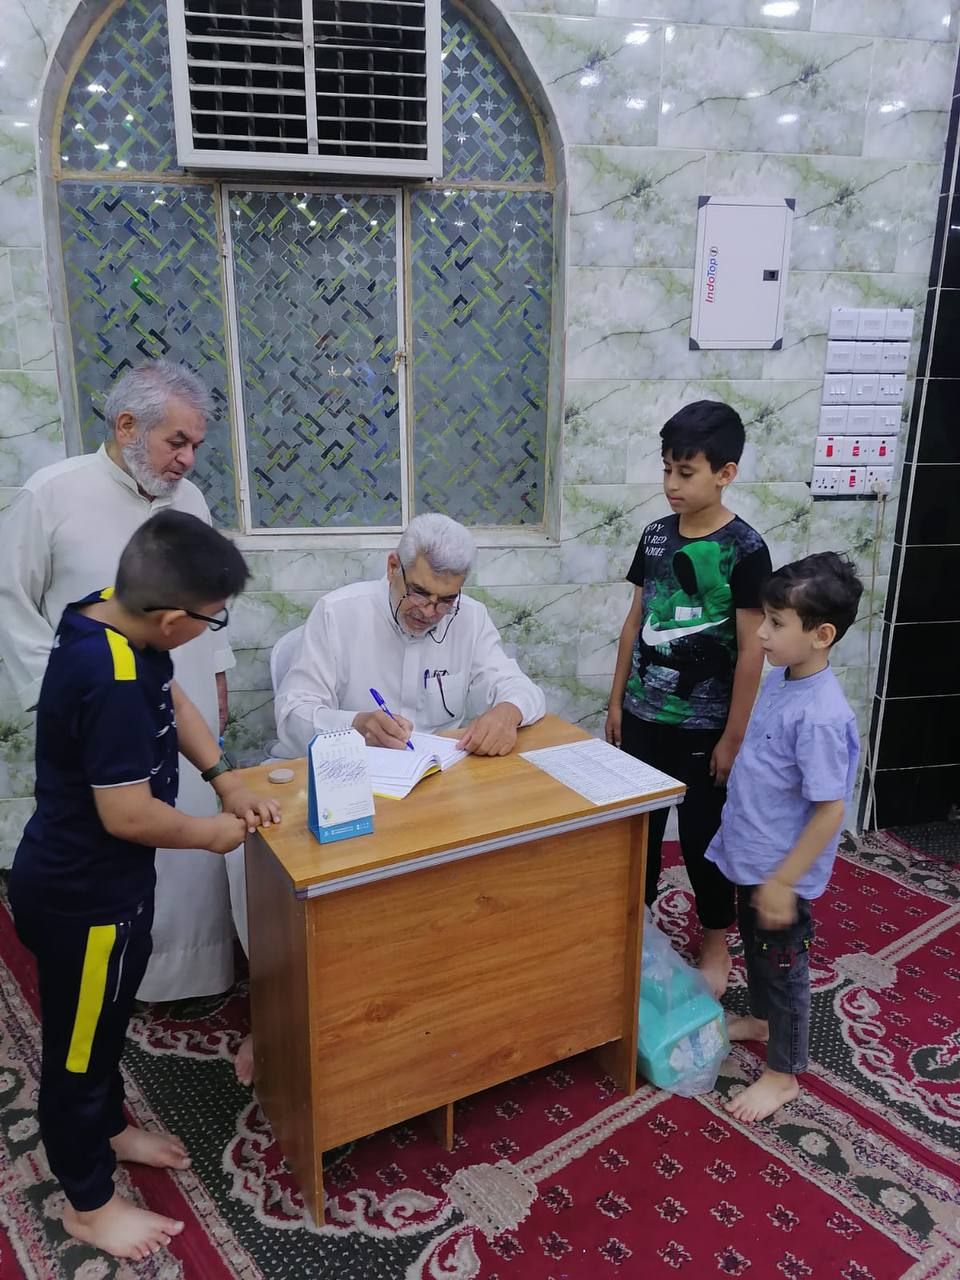 انطلاق التسجيل في مشروع الدورات القرآنية الصيفية في بغداد